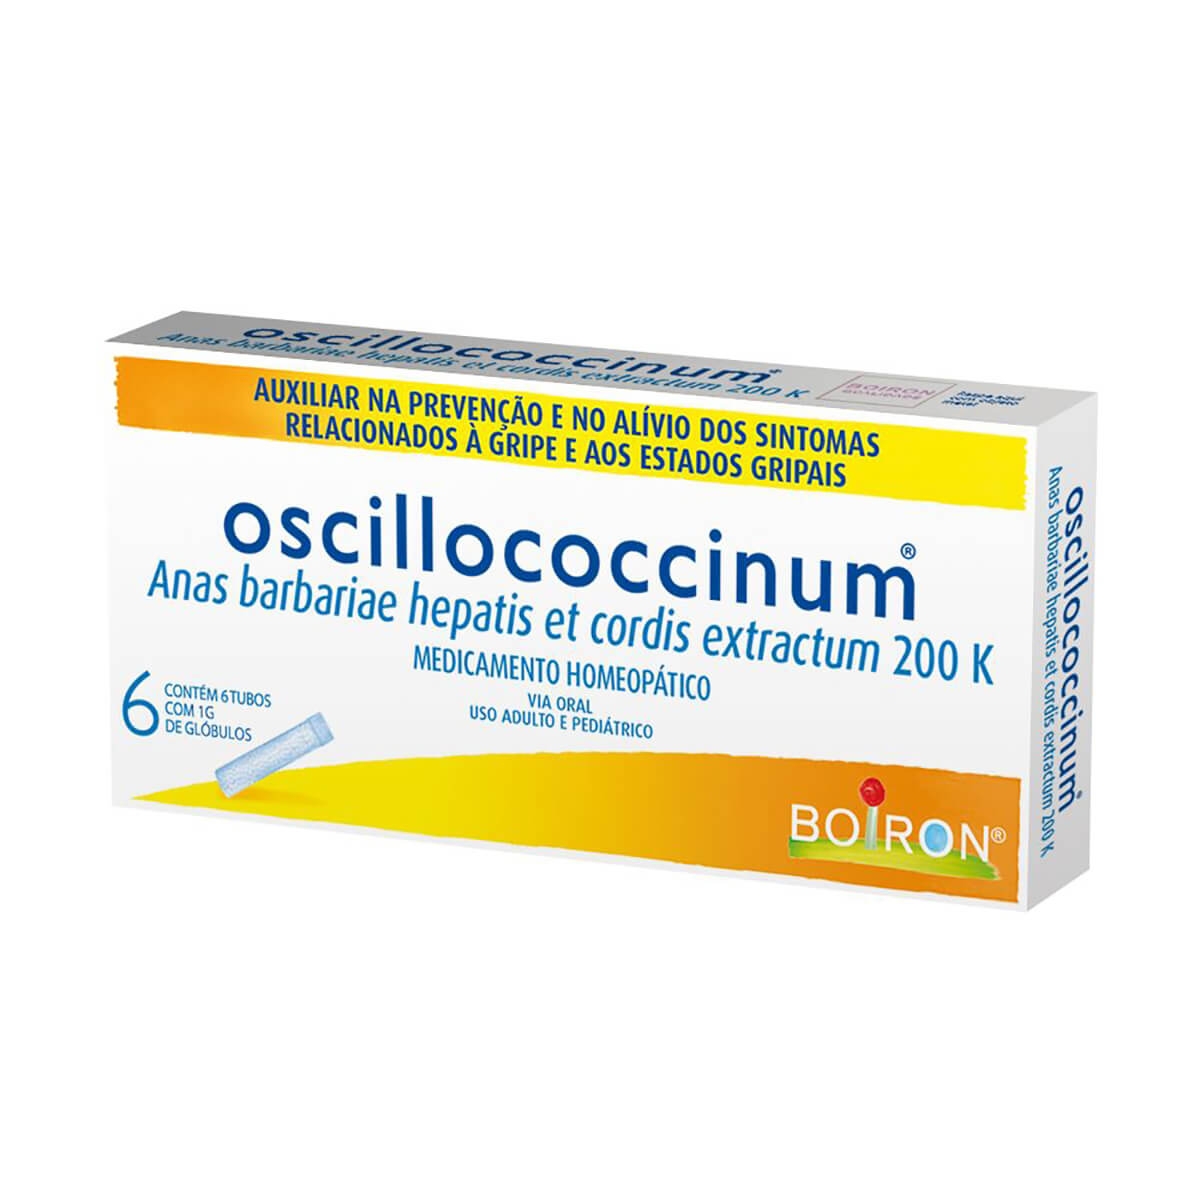 Oscillococcinum 200k Anas Barbariae Hepatis Et Cordis Extractum 200k 6 Tubos de 1g cada